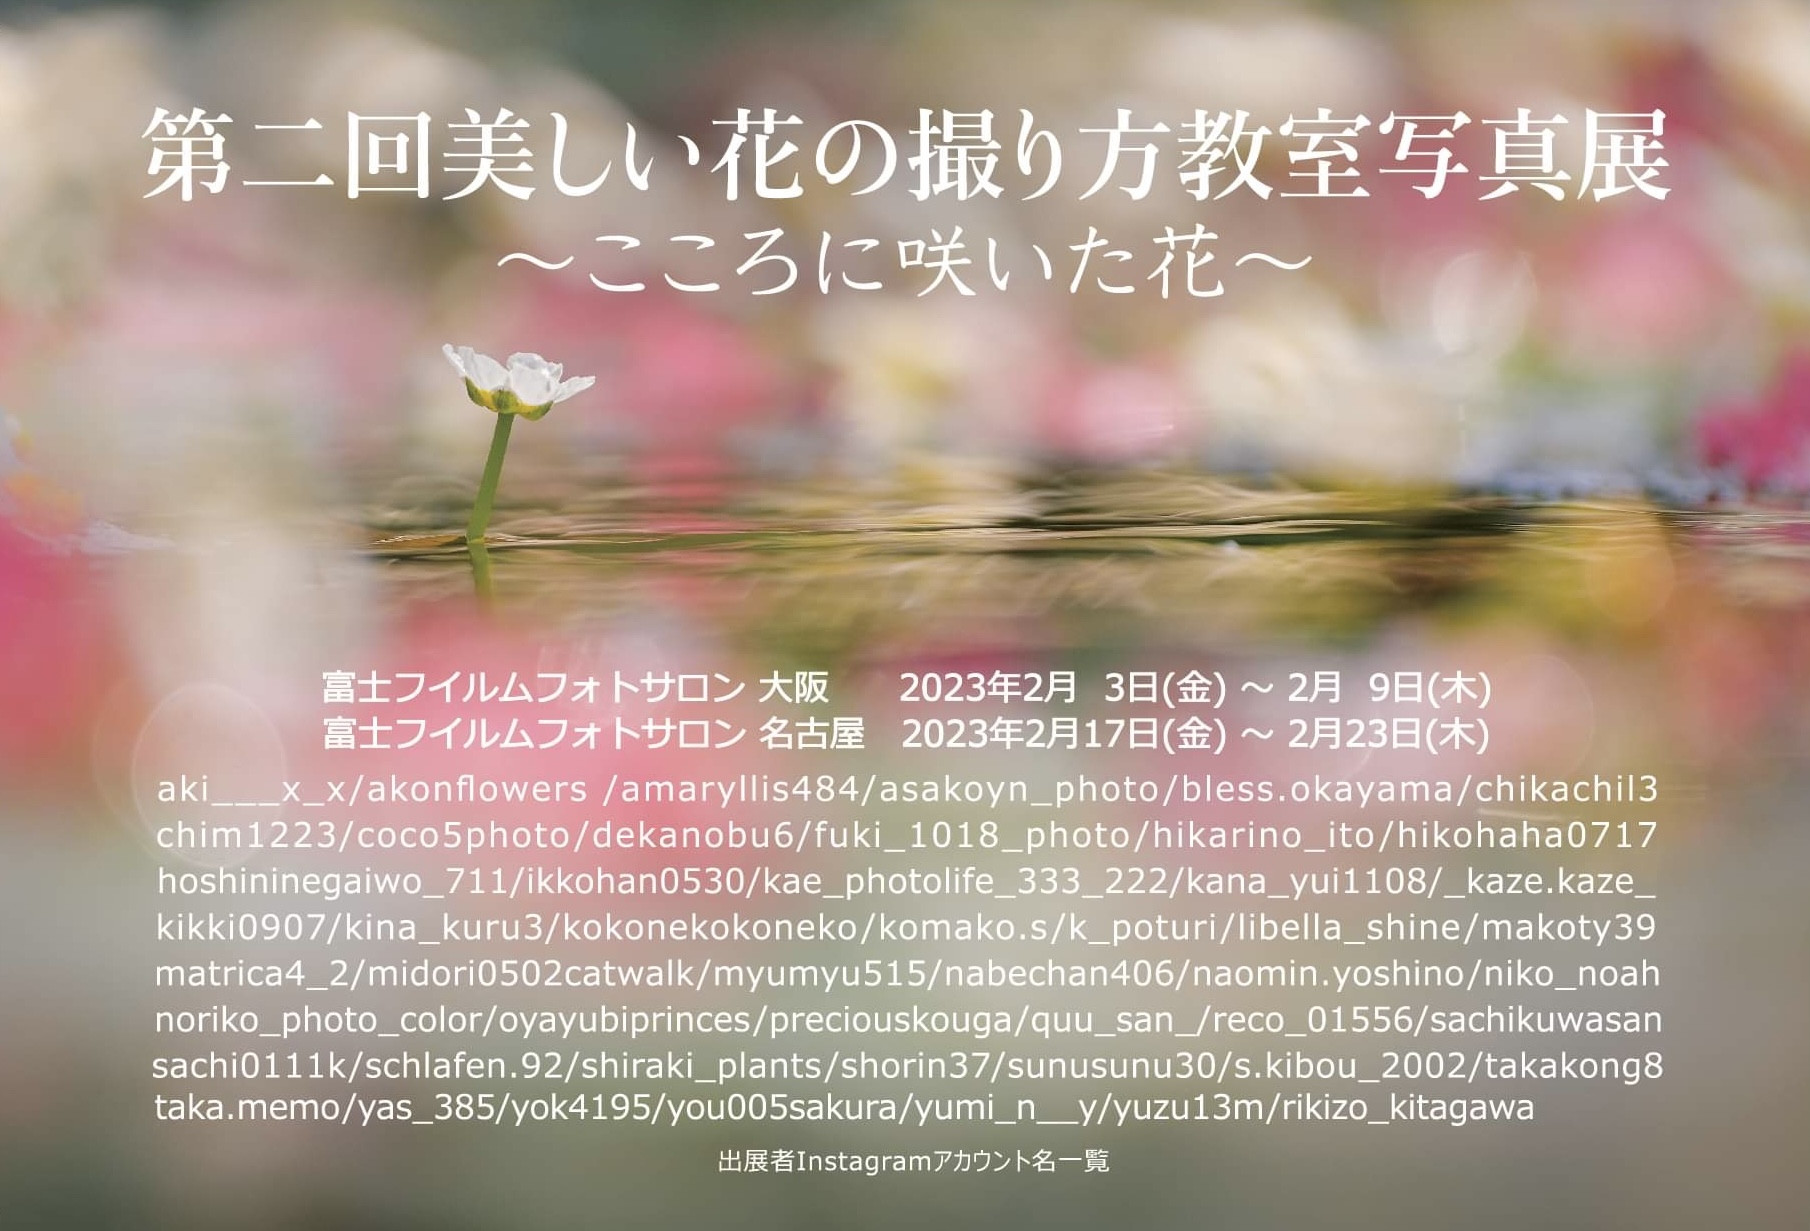 第二回美しい花の撮り方教室写真展〜こころに咲いた花〜